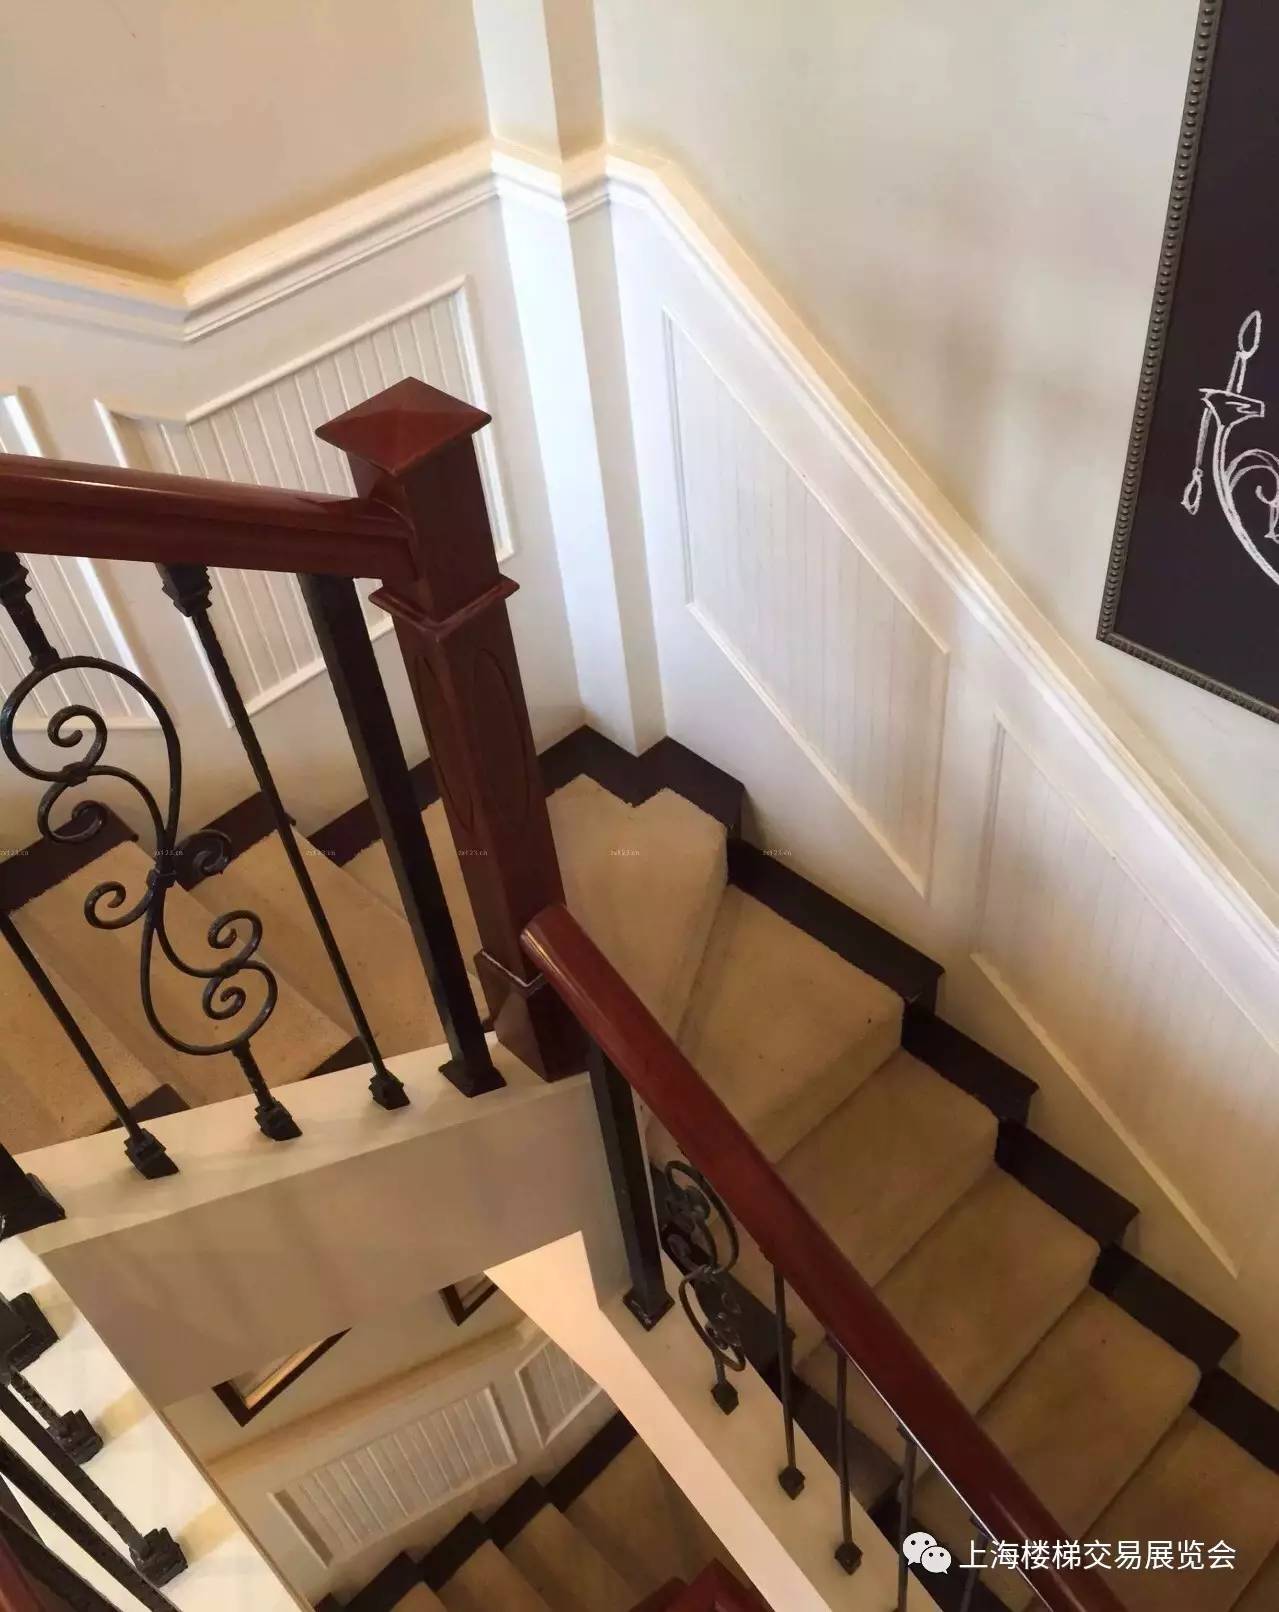 【楼梯展讯】楼梯护墙板 墙面与楼梯的完美结合,60款收藏版!